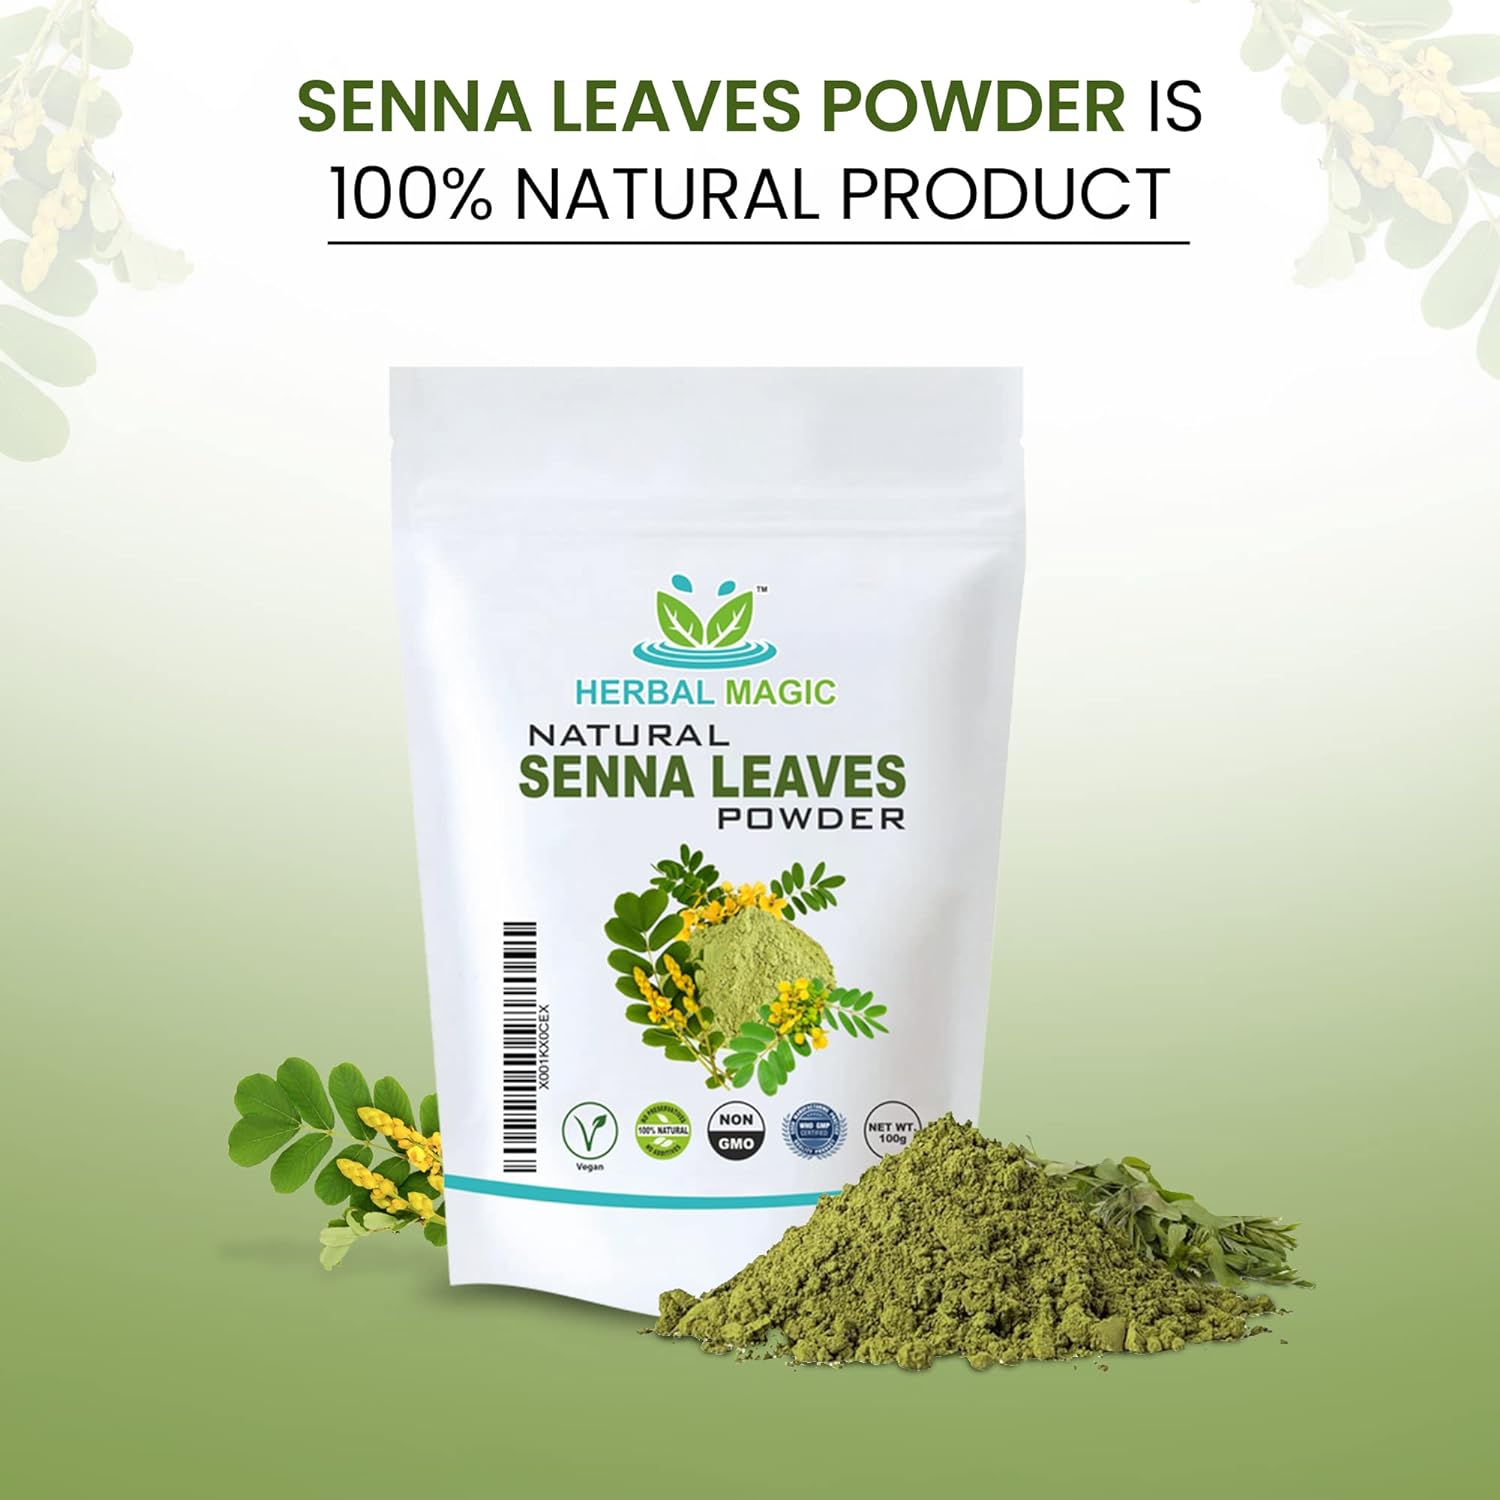 Natural Senna Leaves Powder